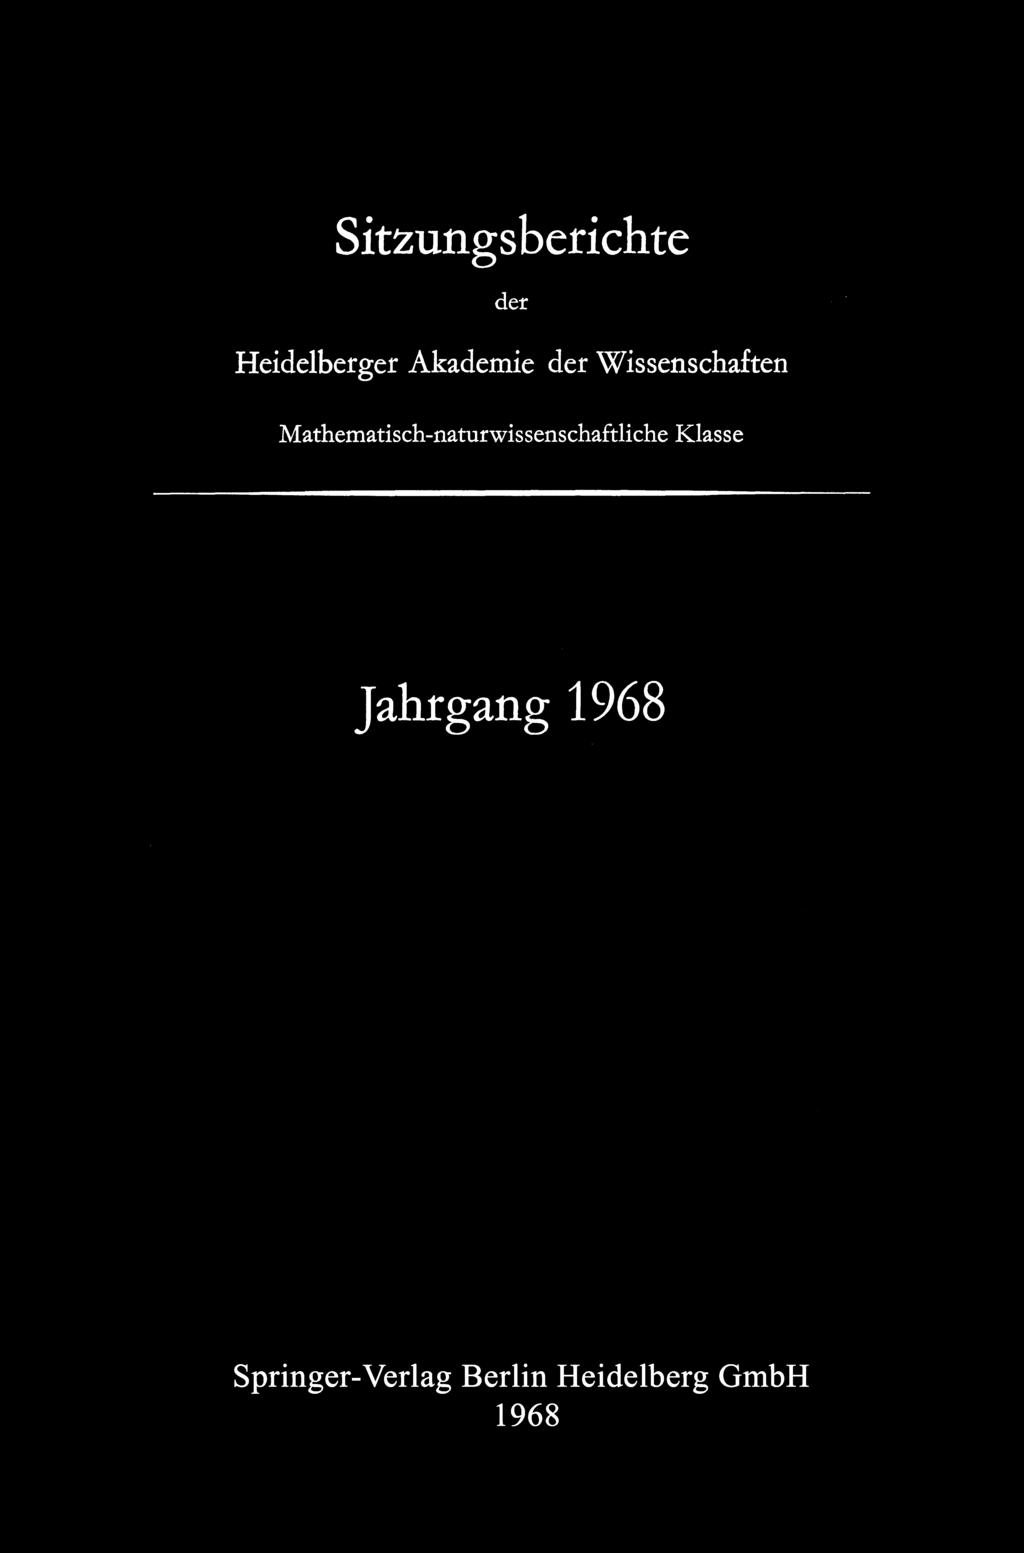 Sitzungsberichte der Heidelberger